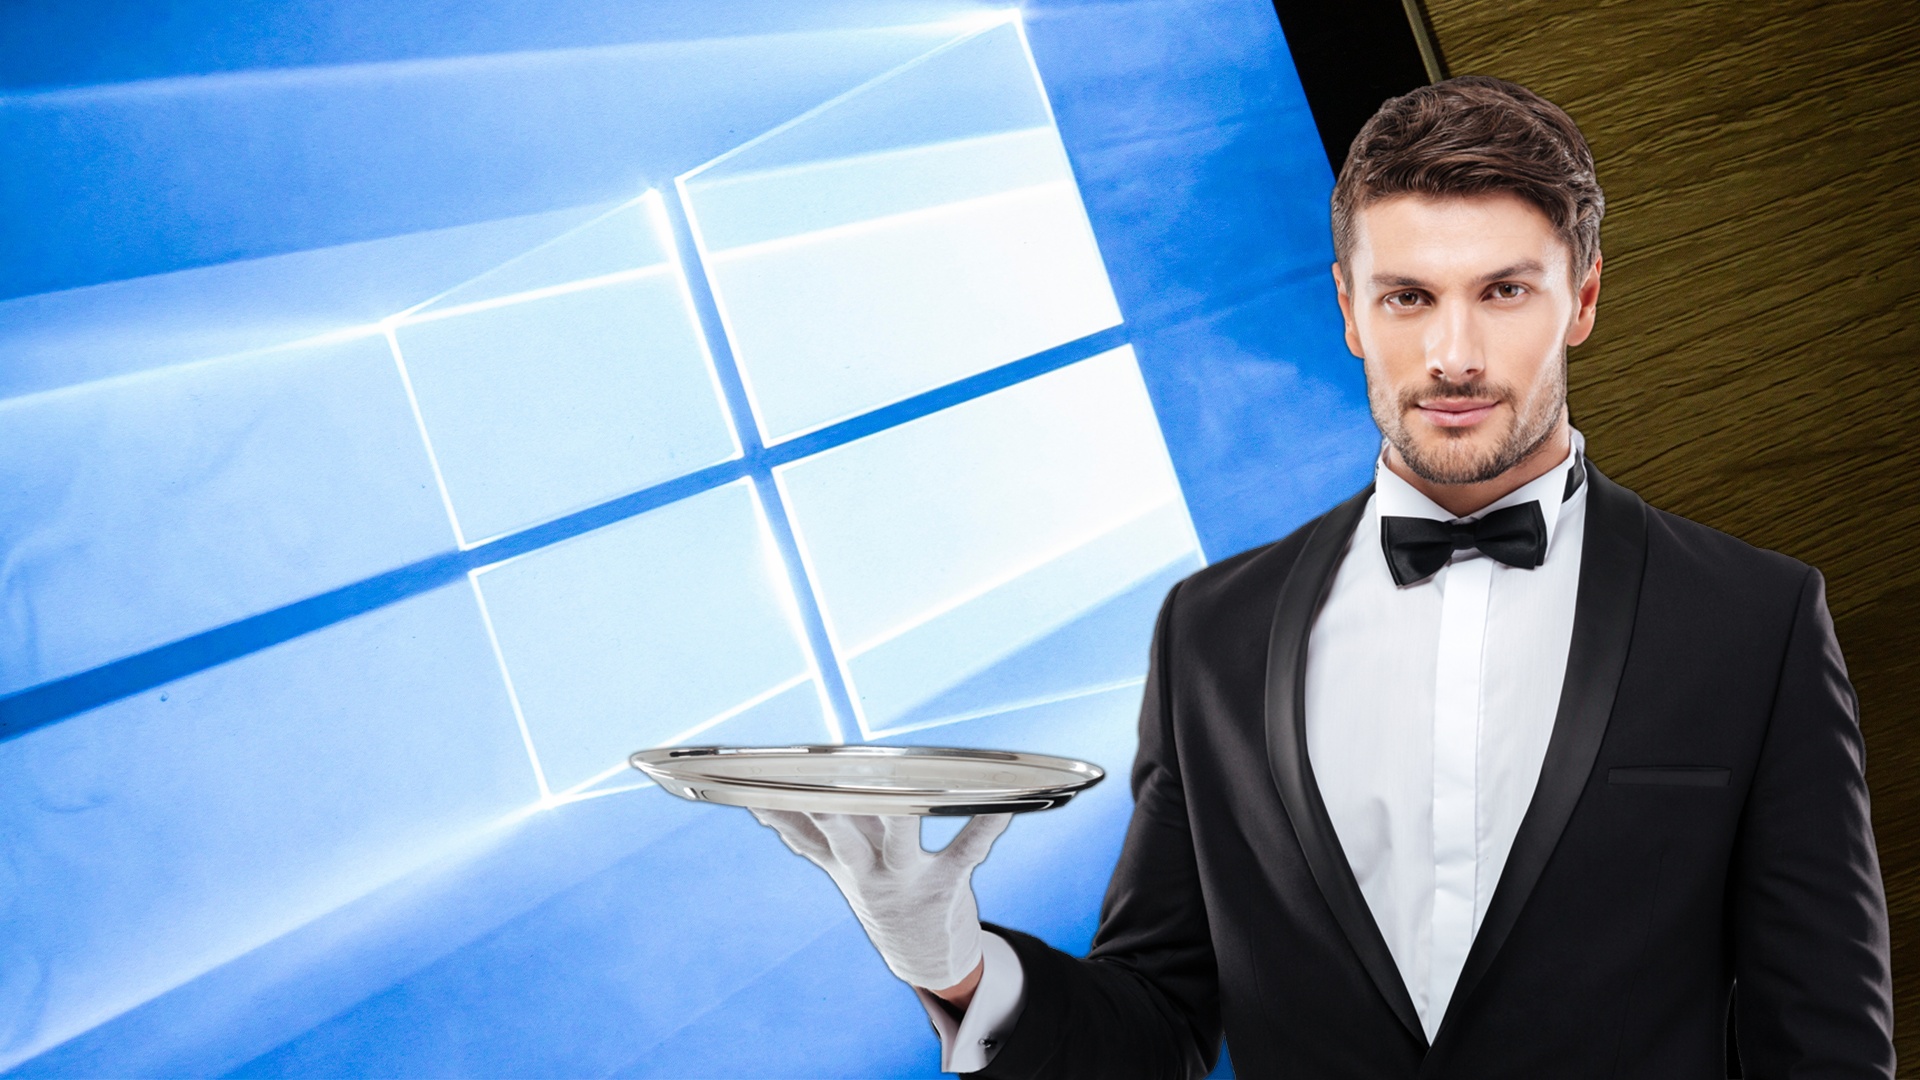 #Erster Einblick: Der neue Windows 11 Copilot wird euch einiges an Arbeit abnehmen – Wenn er dann richtig funktioniert